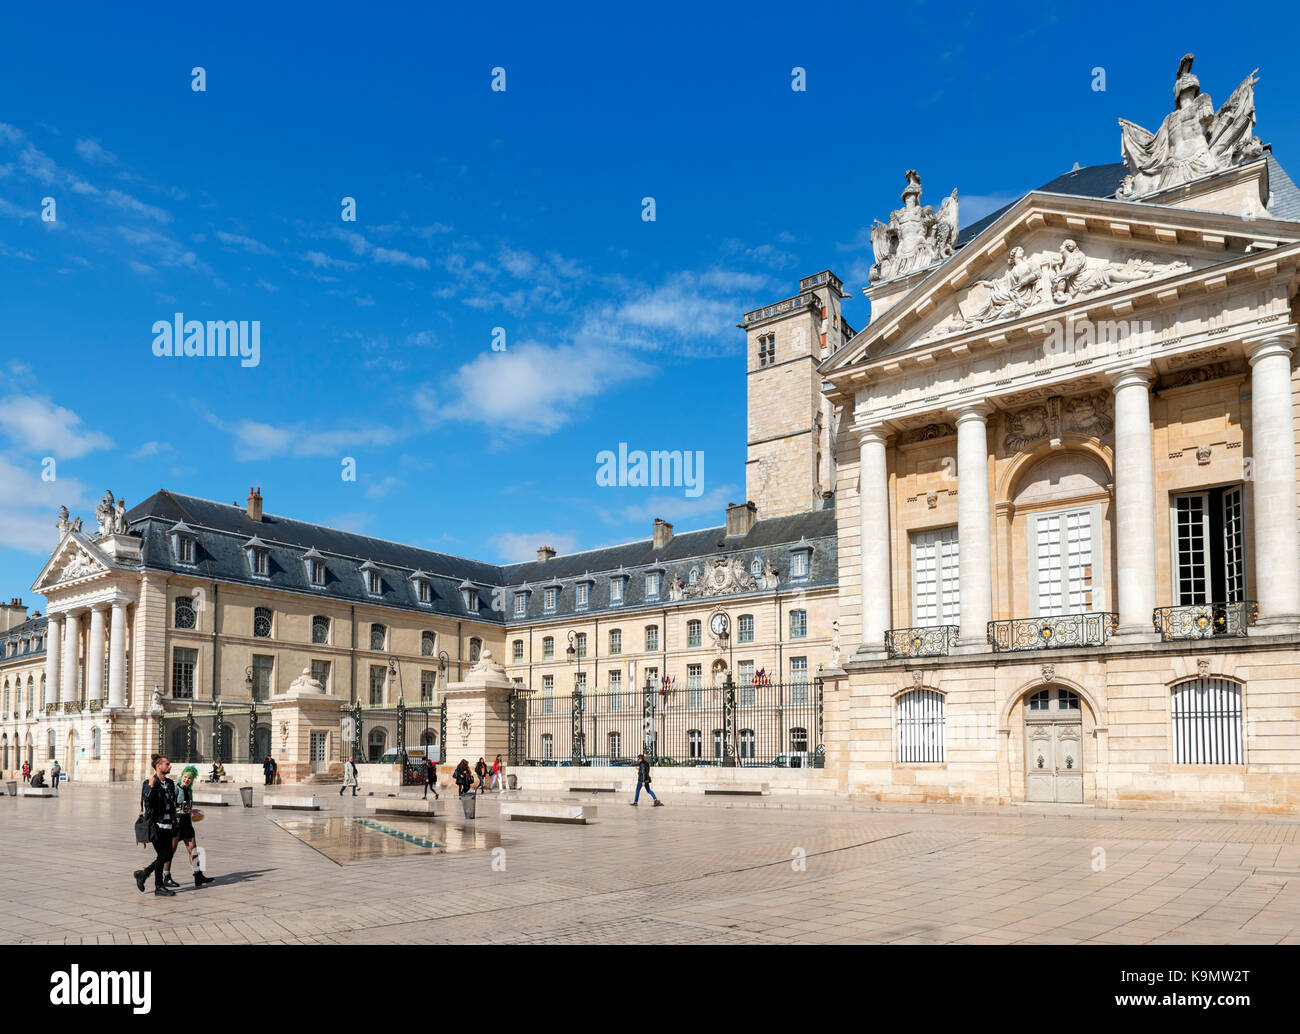 Dijon, France. Palais des Ducs de Burgunady, abritant le Musée des beaux-arts, Place de la libération, Dijon, Côte-d'Or, Bourgogne, France Banque D'Images